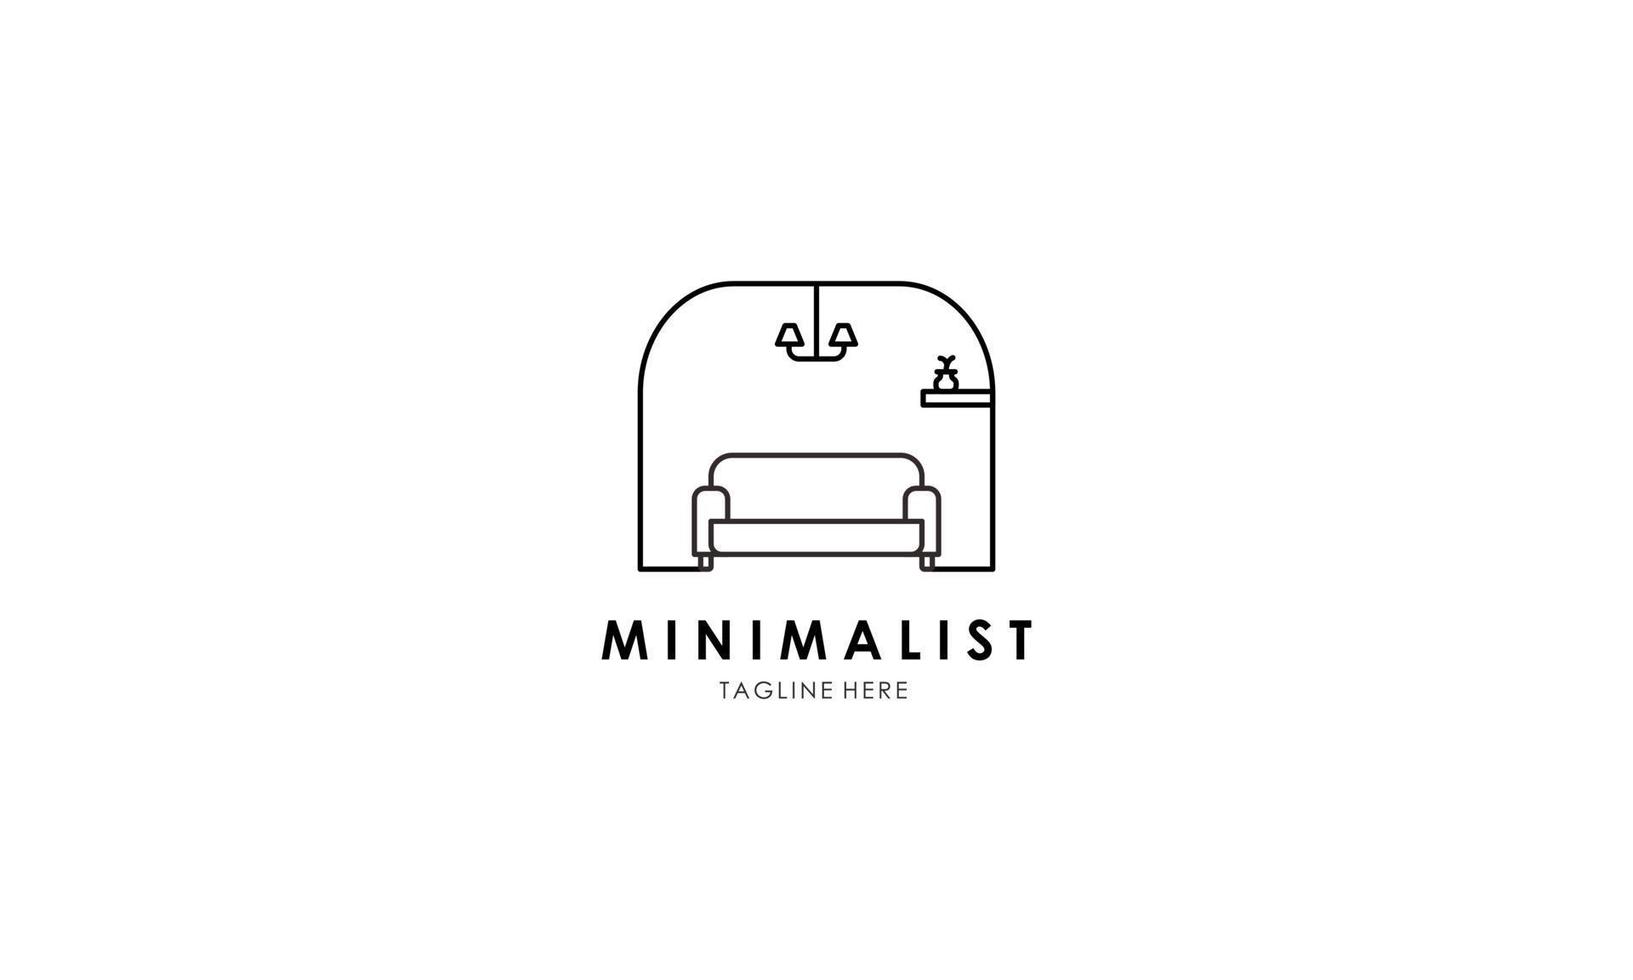 logotipo de muebles minimalistas, vector de logotipo de muebles de arte lineal